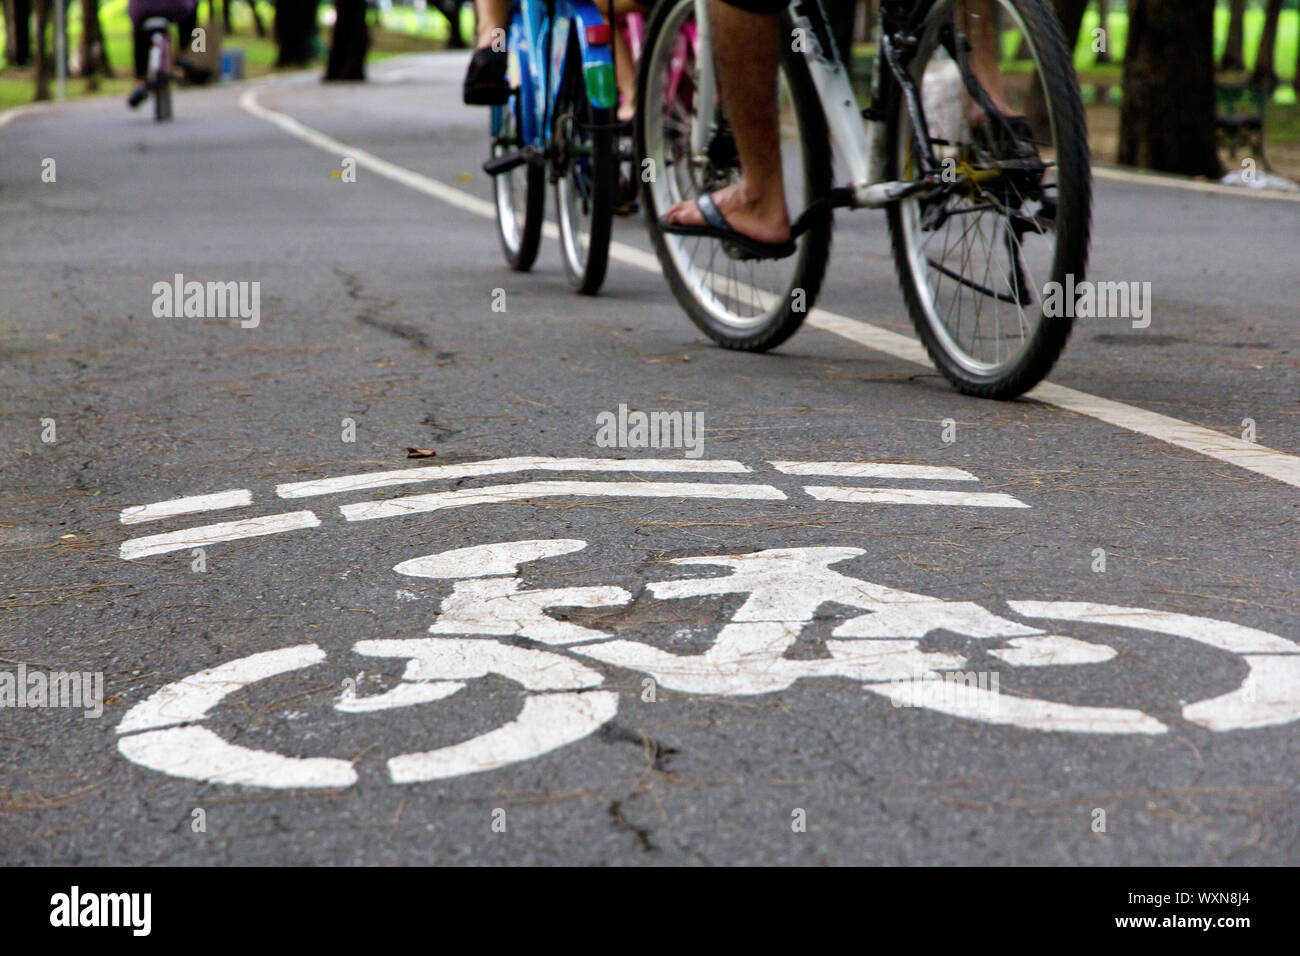 Bike lane in the park Stock Photo